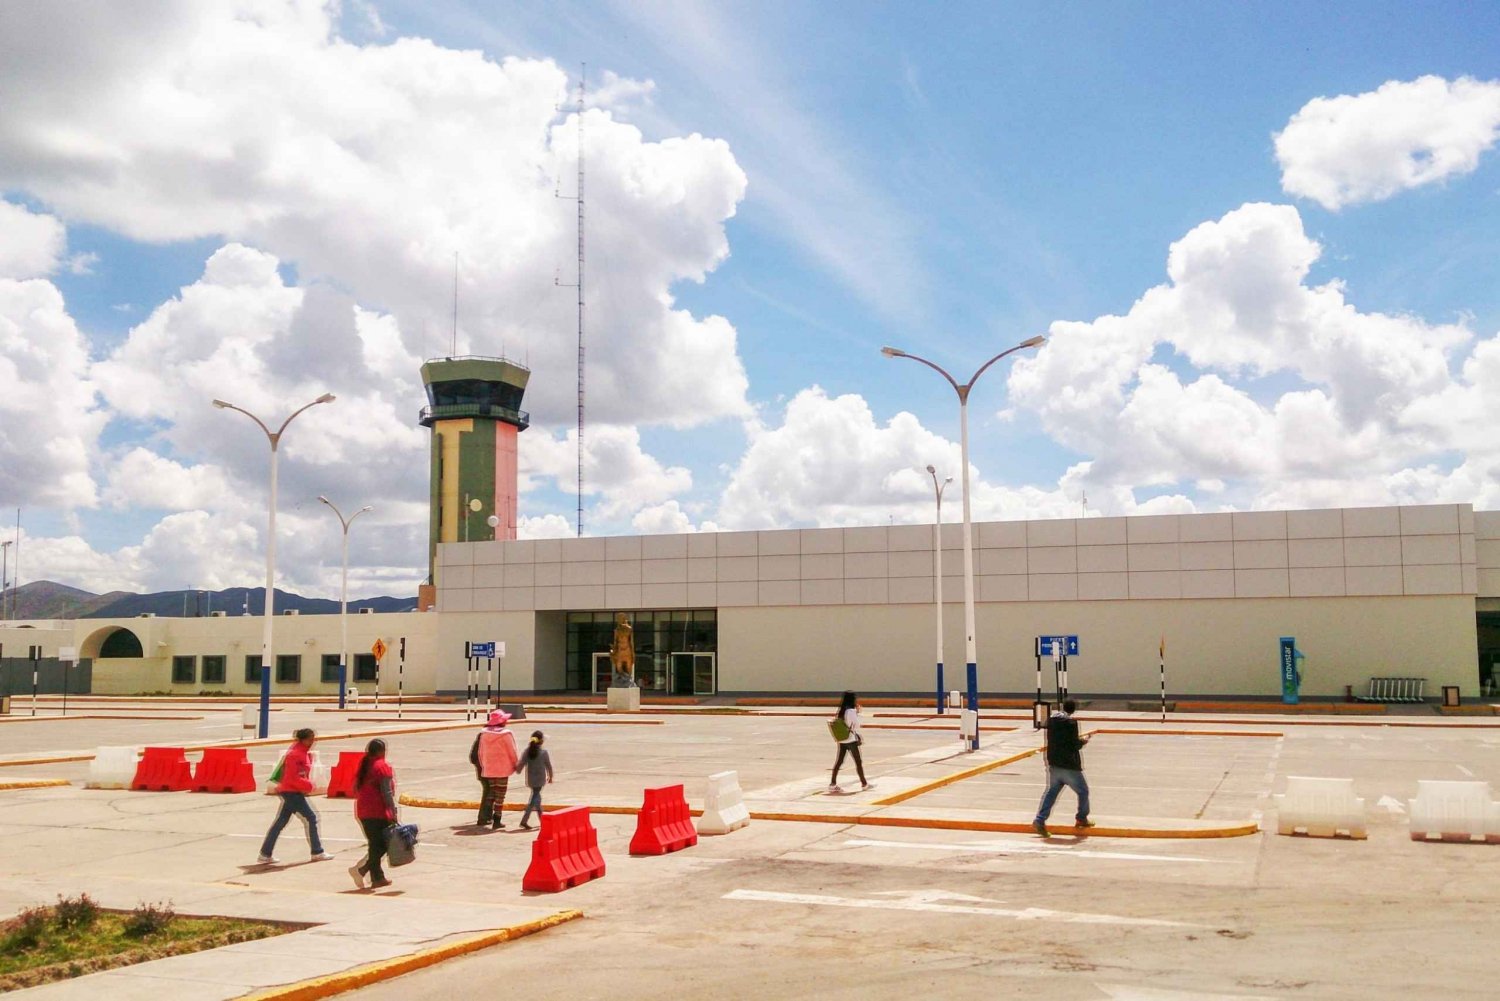 Privat transfer mellan Juliacas flygplats och Puno City